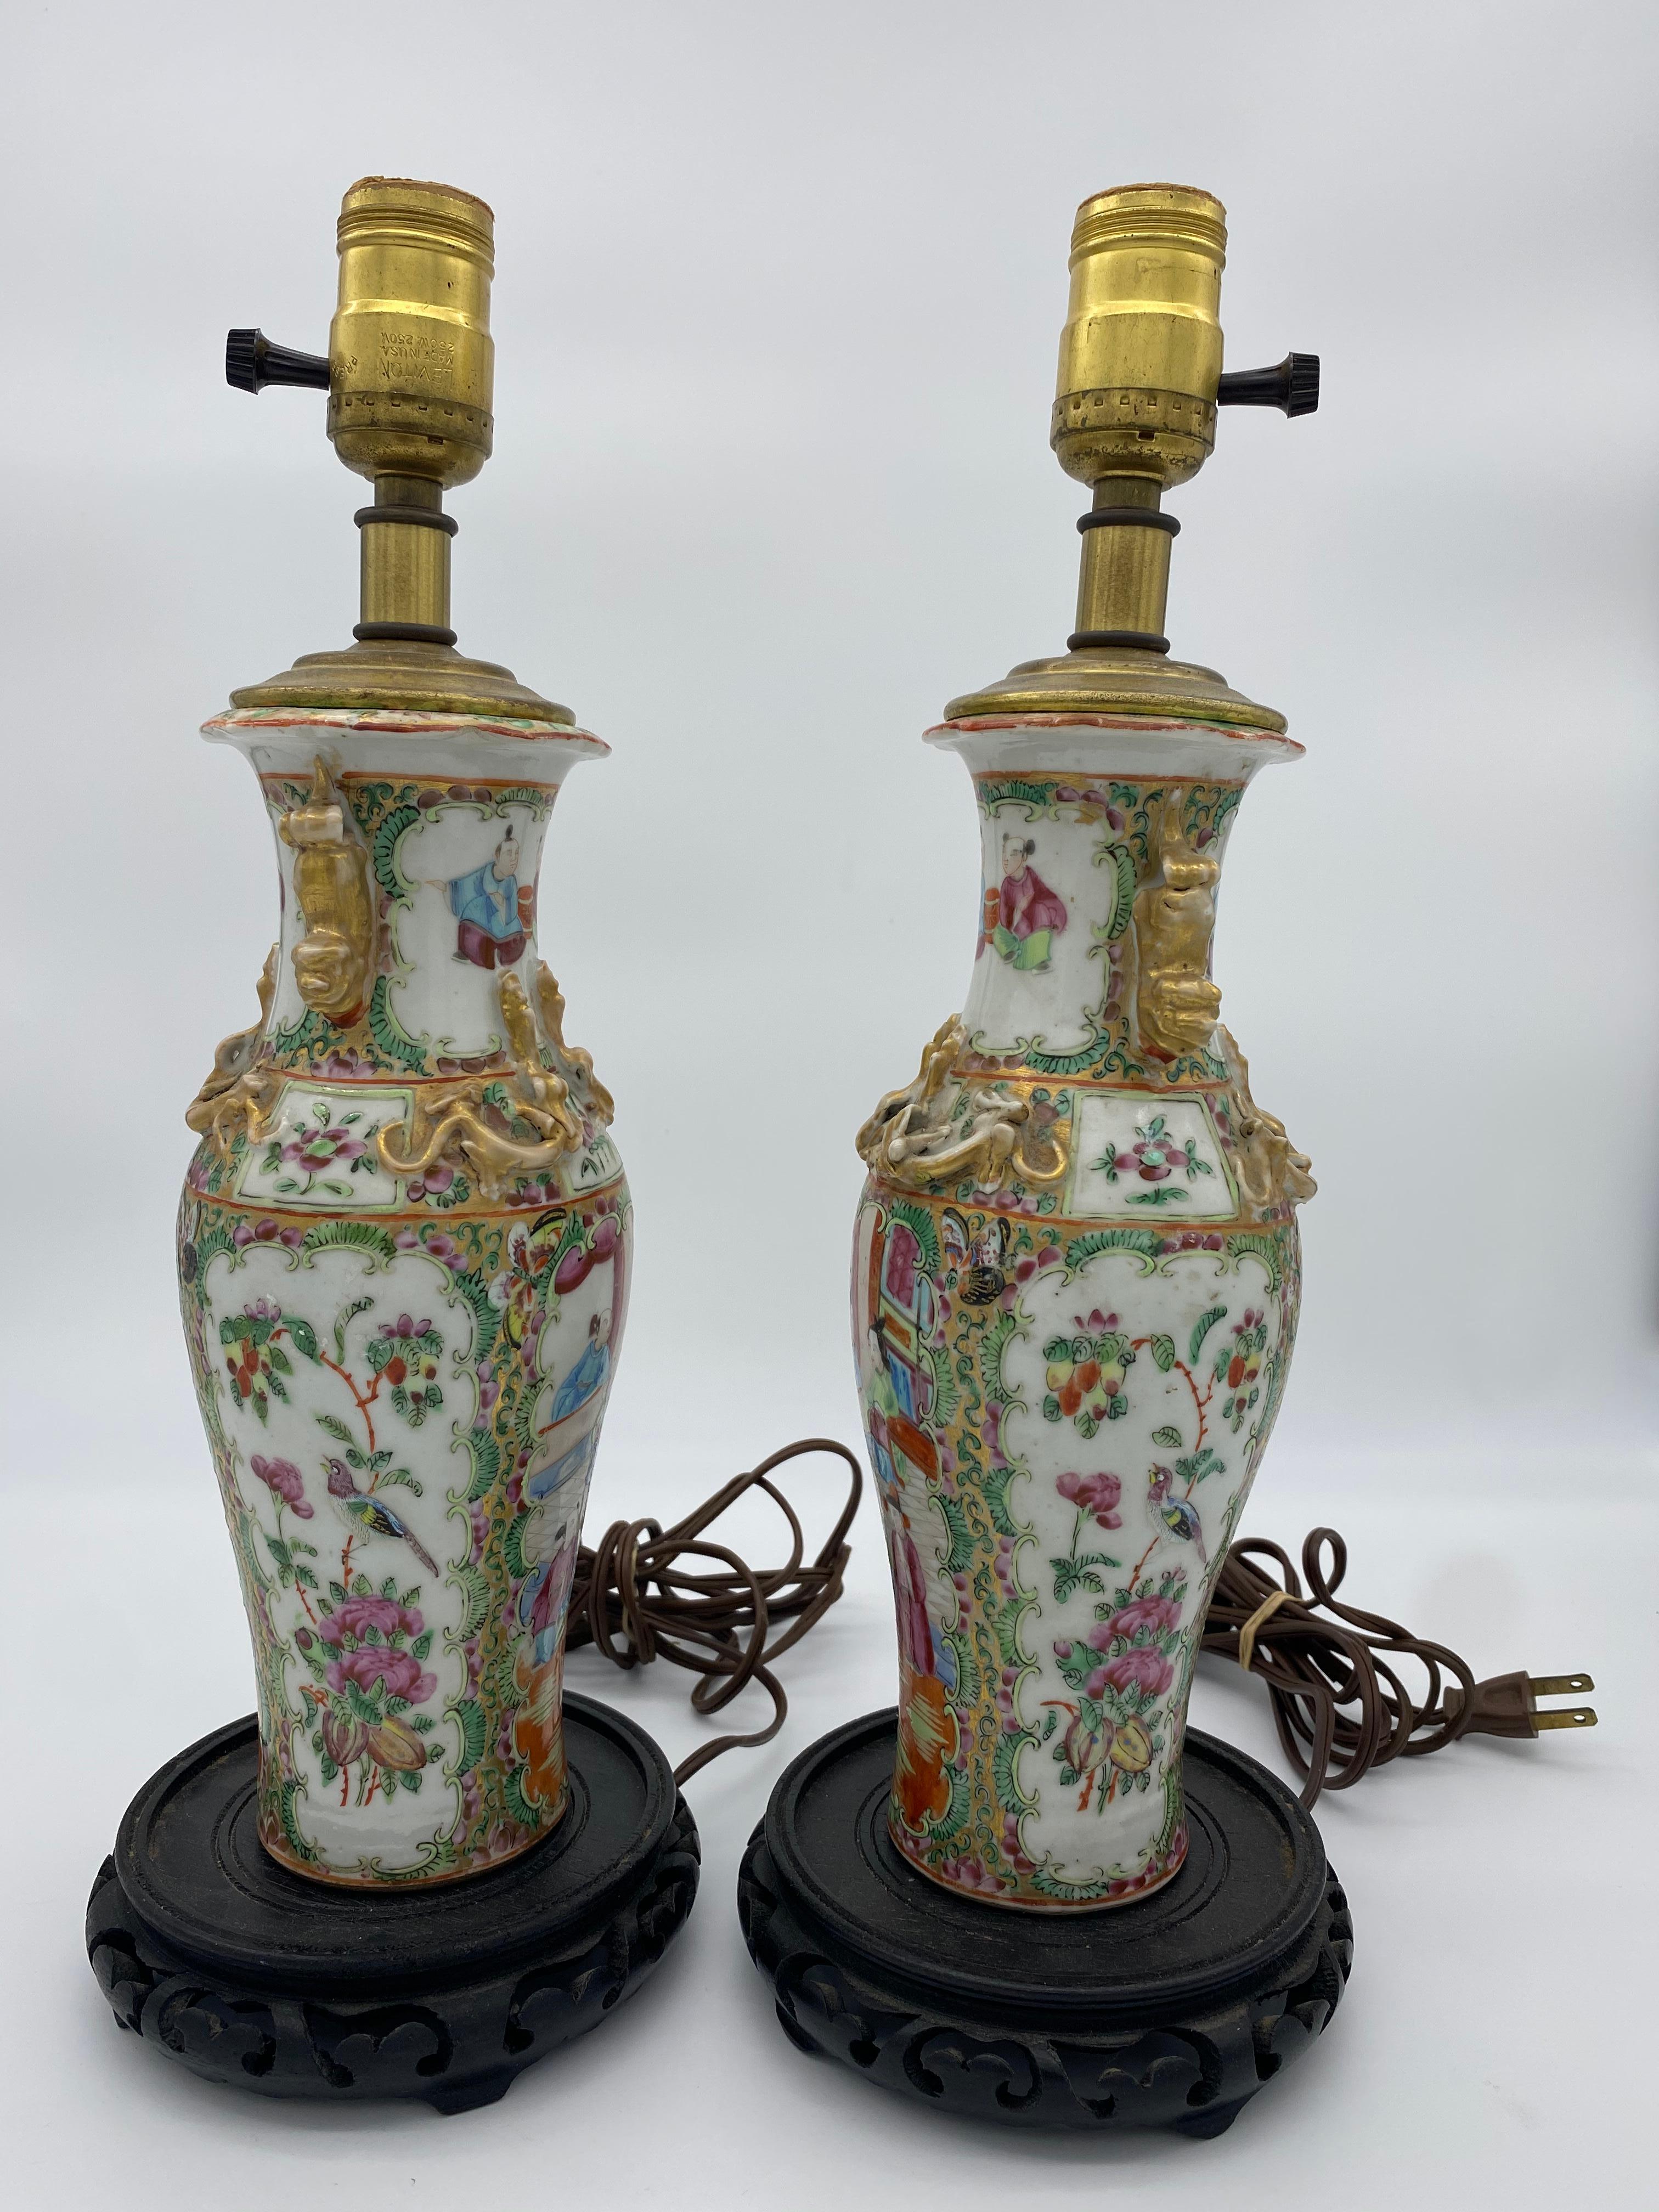 Vase en porcelaine chinoise du 19e siècle monté en lampe. Décorée de belles fleurs et d'une famille. Le vase, lampe non comprise, mesure 10 pouces de haut.